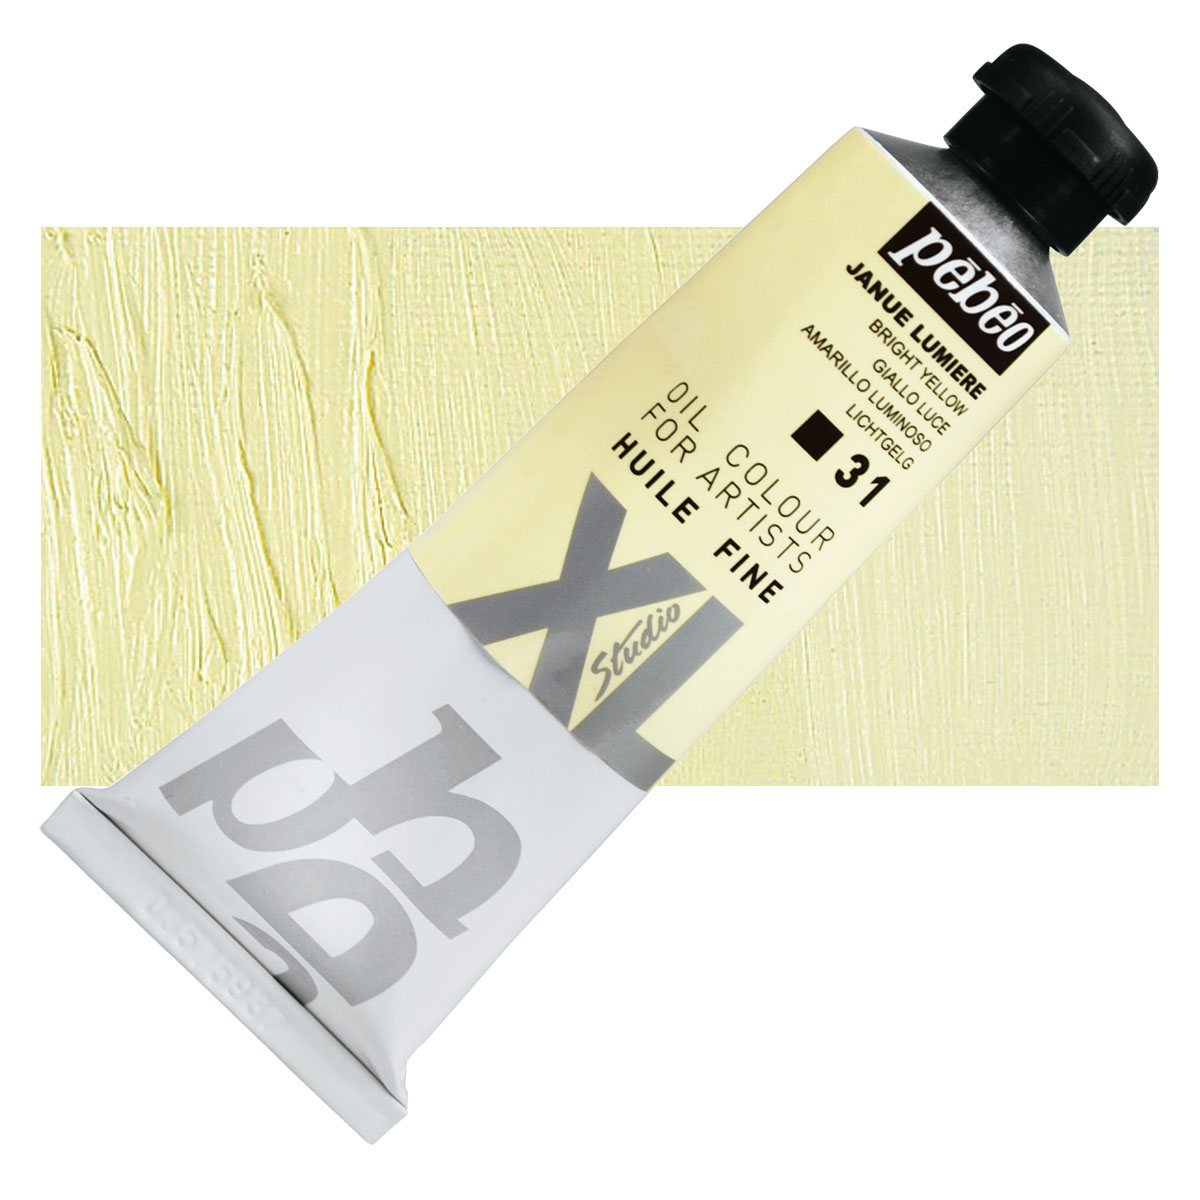 Pebeo XL Studio Oil Paints | BLICK Art Materials